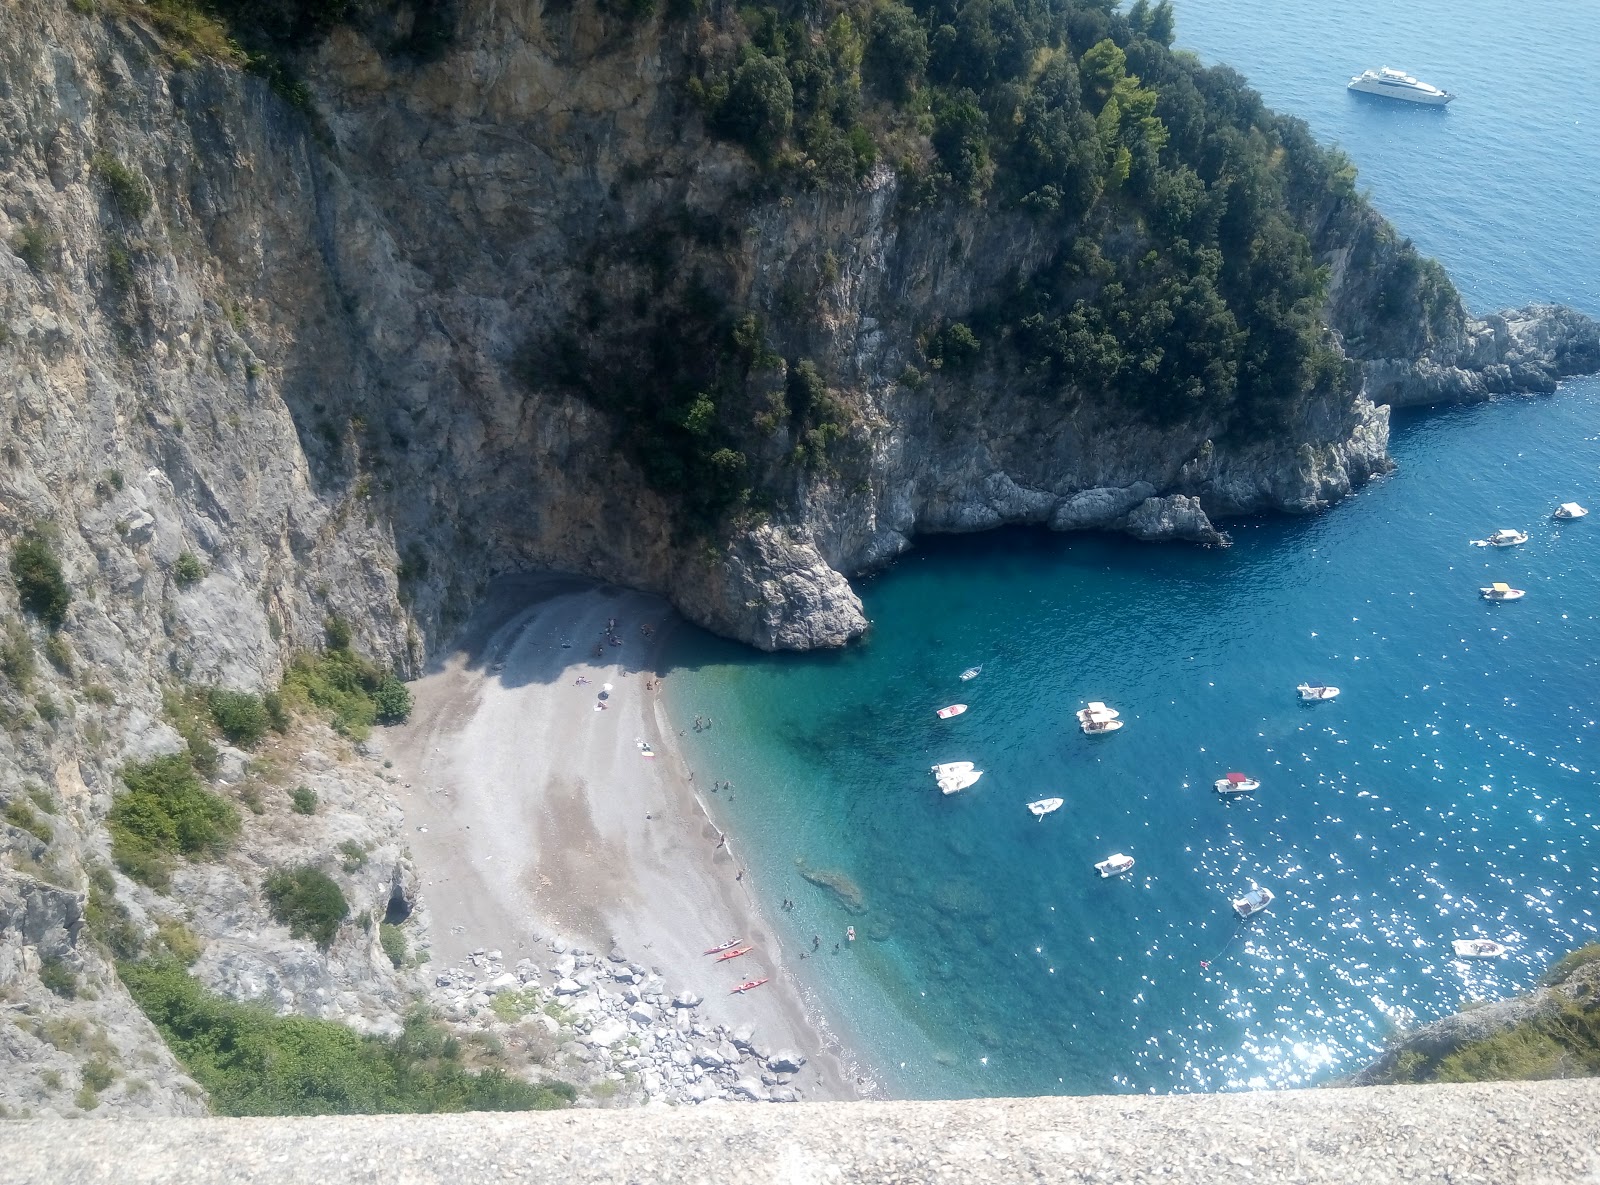 Foto van Spiaggia Cavallo Morto met gemiddeld niveau van netheid